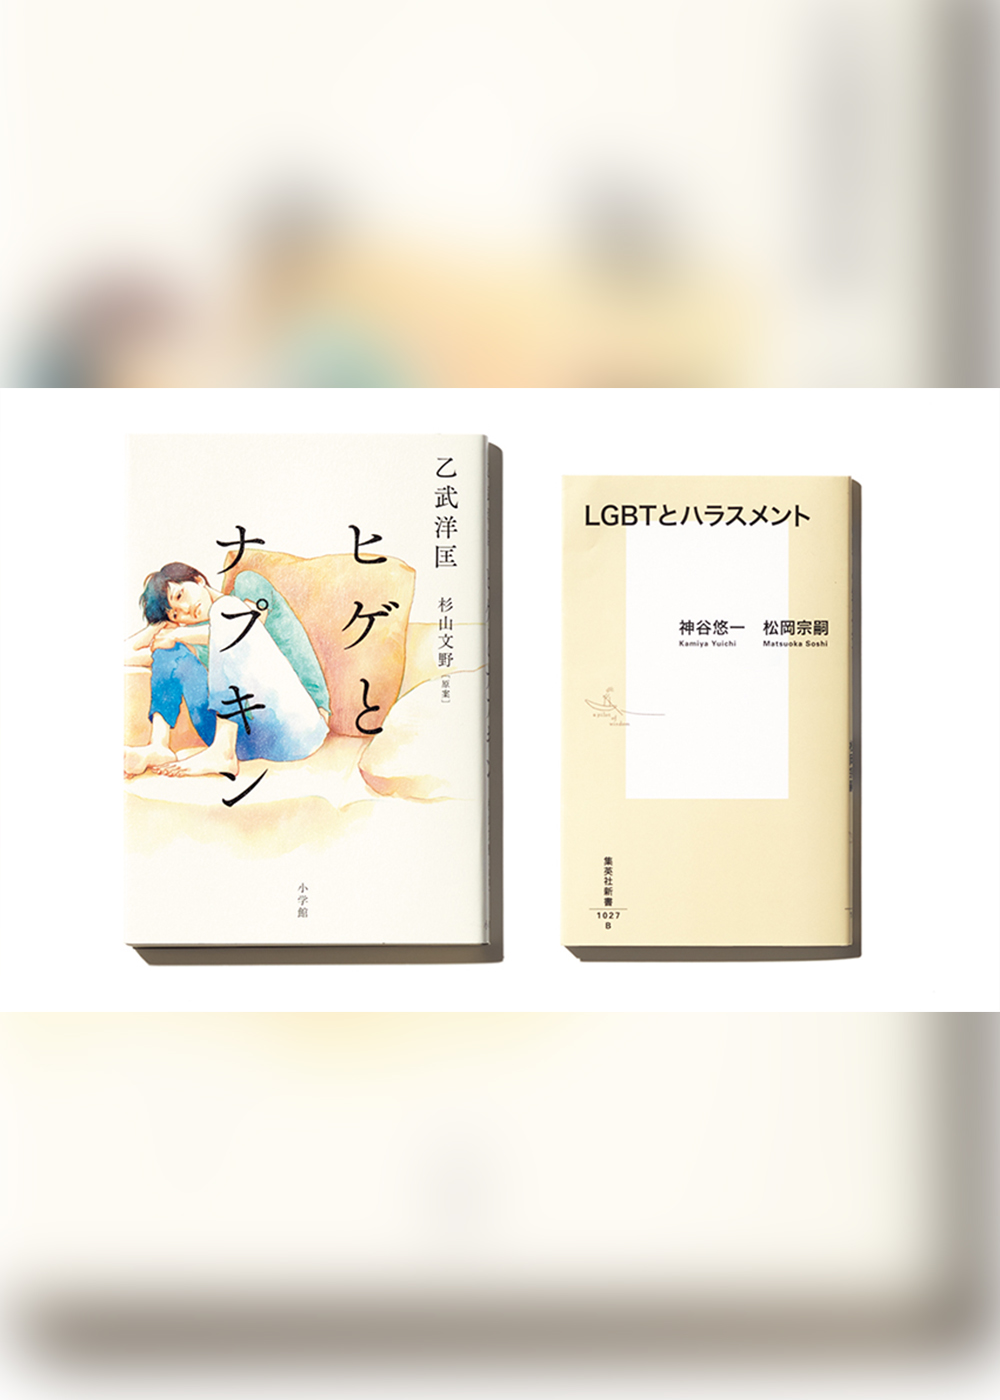 西村宏堂が選ぶ「性の多様性を理解するために読むべき２冊」